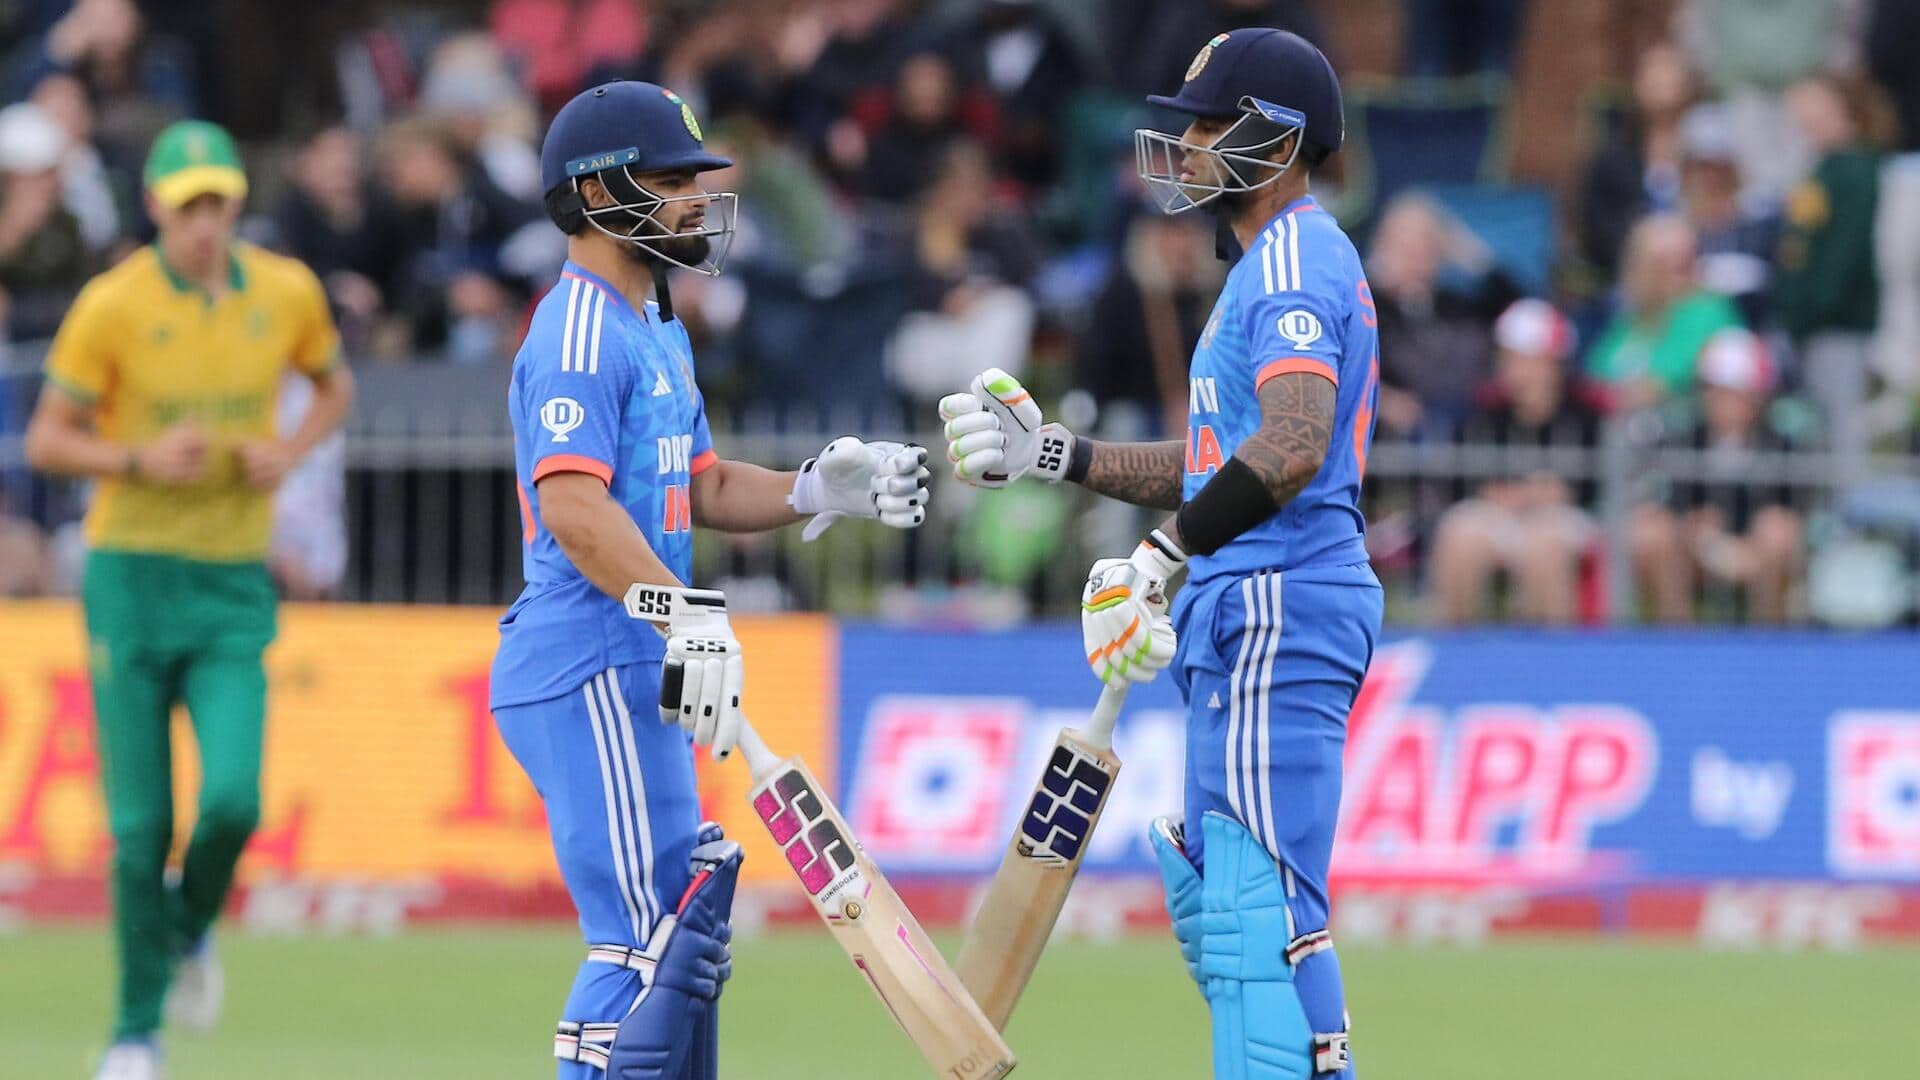 दक्षिण अफ्रीका बनाम भारत: रिंकू सिंह ने लगाया टी-20 अंतरराष्ट्रीय करियर का पहला अर्धशतक, जानिए आंकड़े